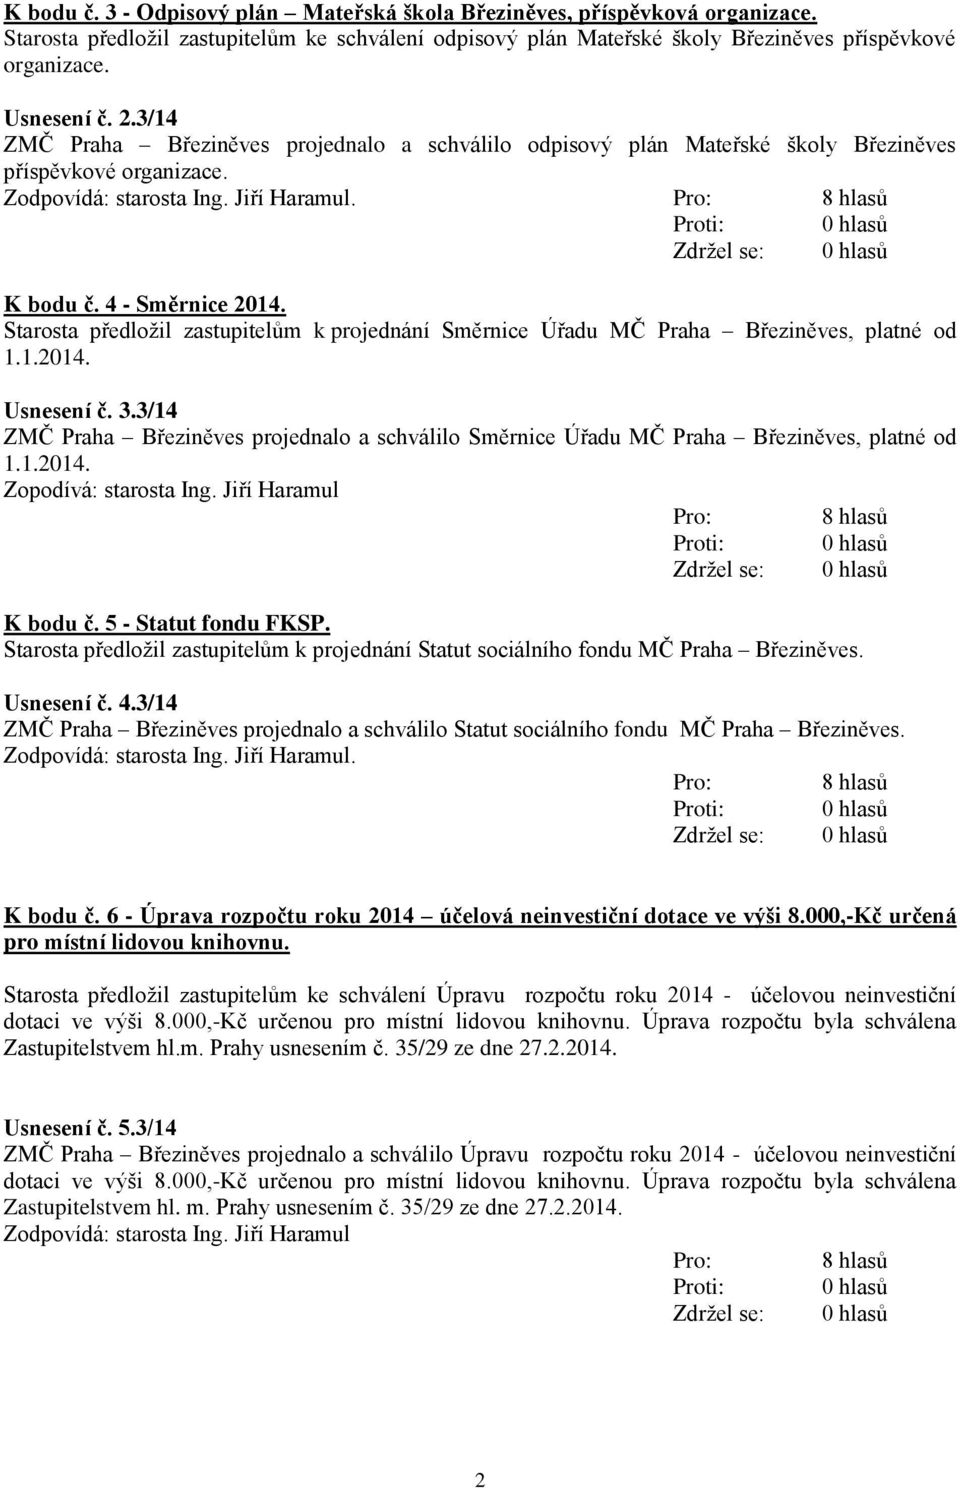 Starosta předložil zastupitelům k projednání Směrnice Úřadu MČ Praha Březiněves, platné od 1.1.2014. Usnesení č. 3.